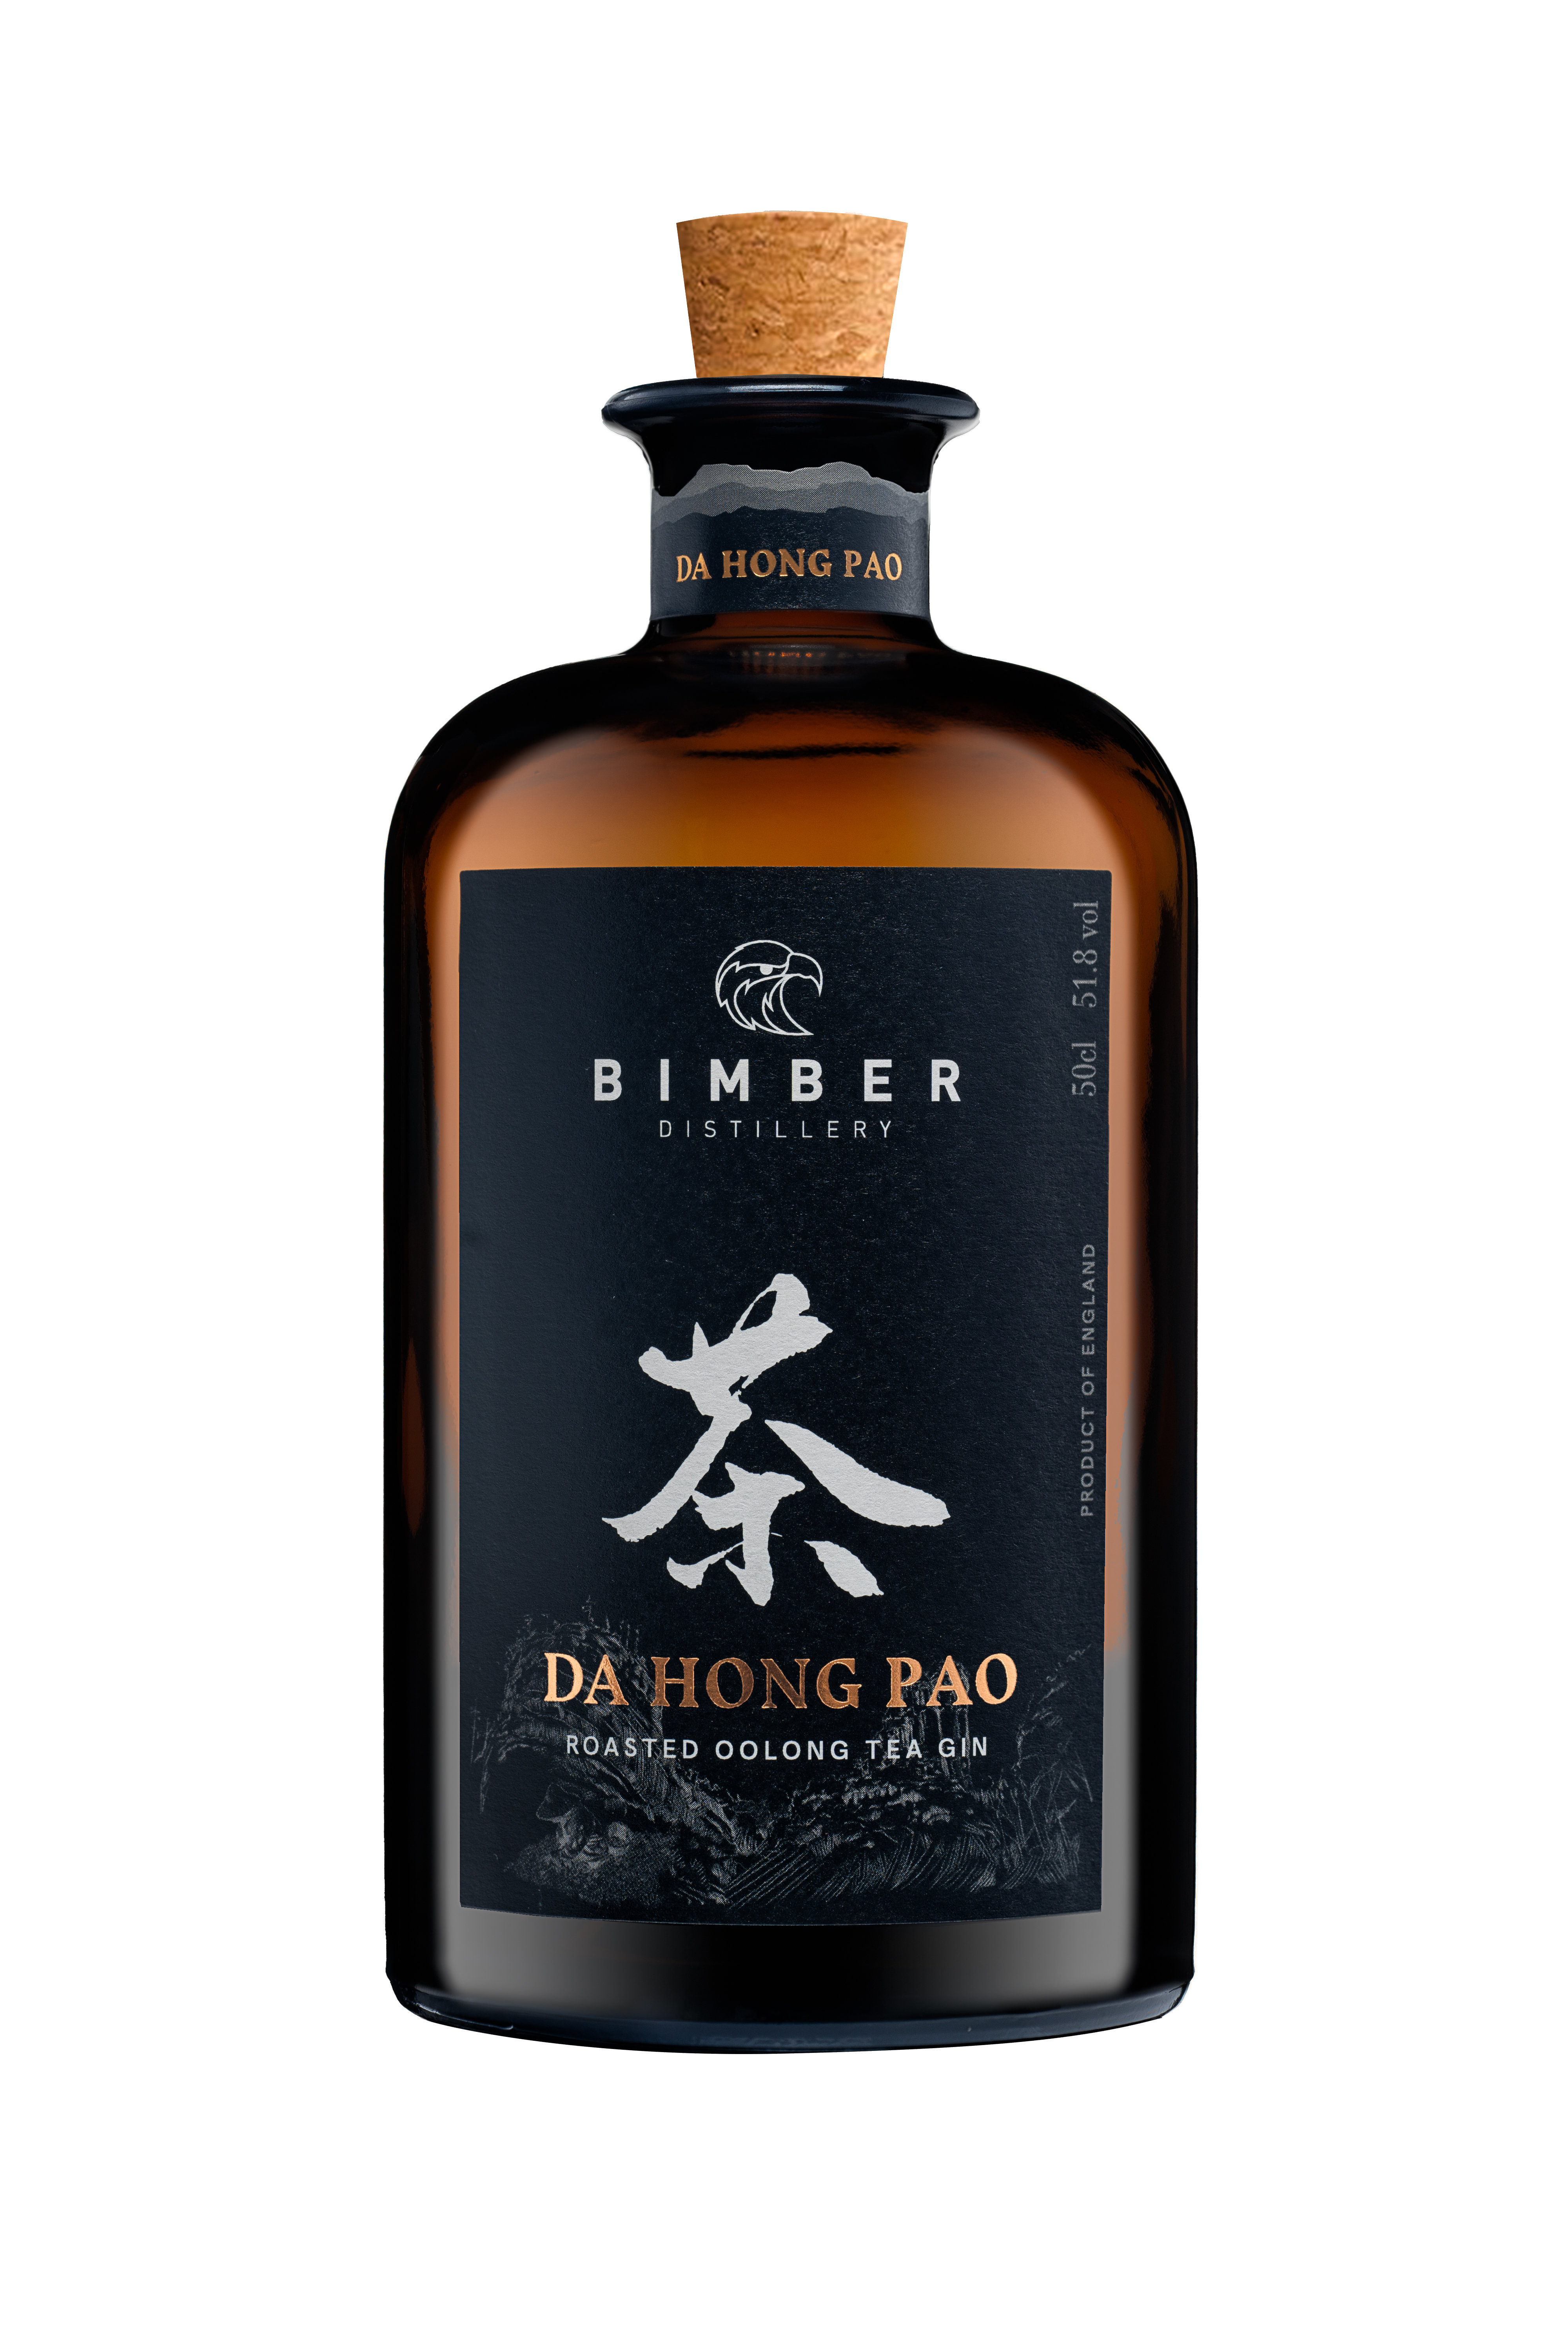 Bimber Da Hong Pao Tea Gin Gin 51.8% 50cl